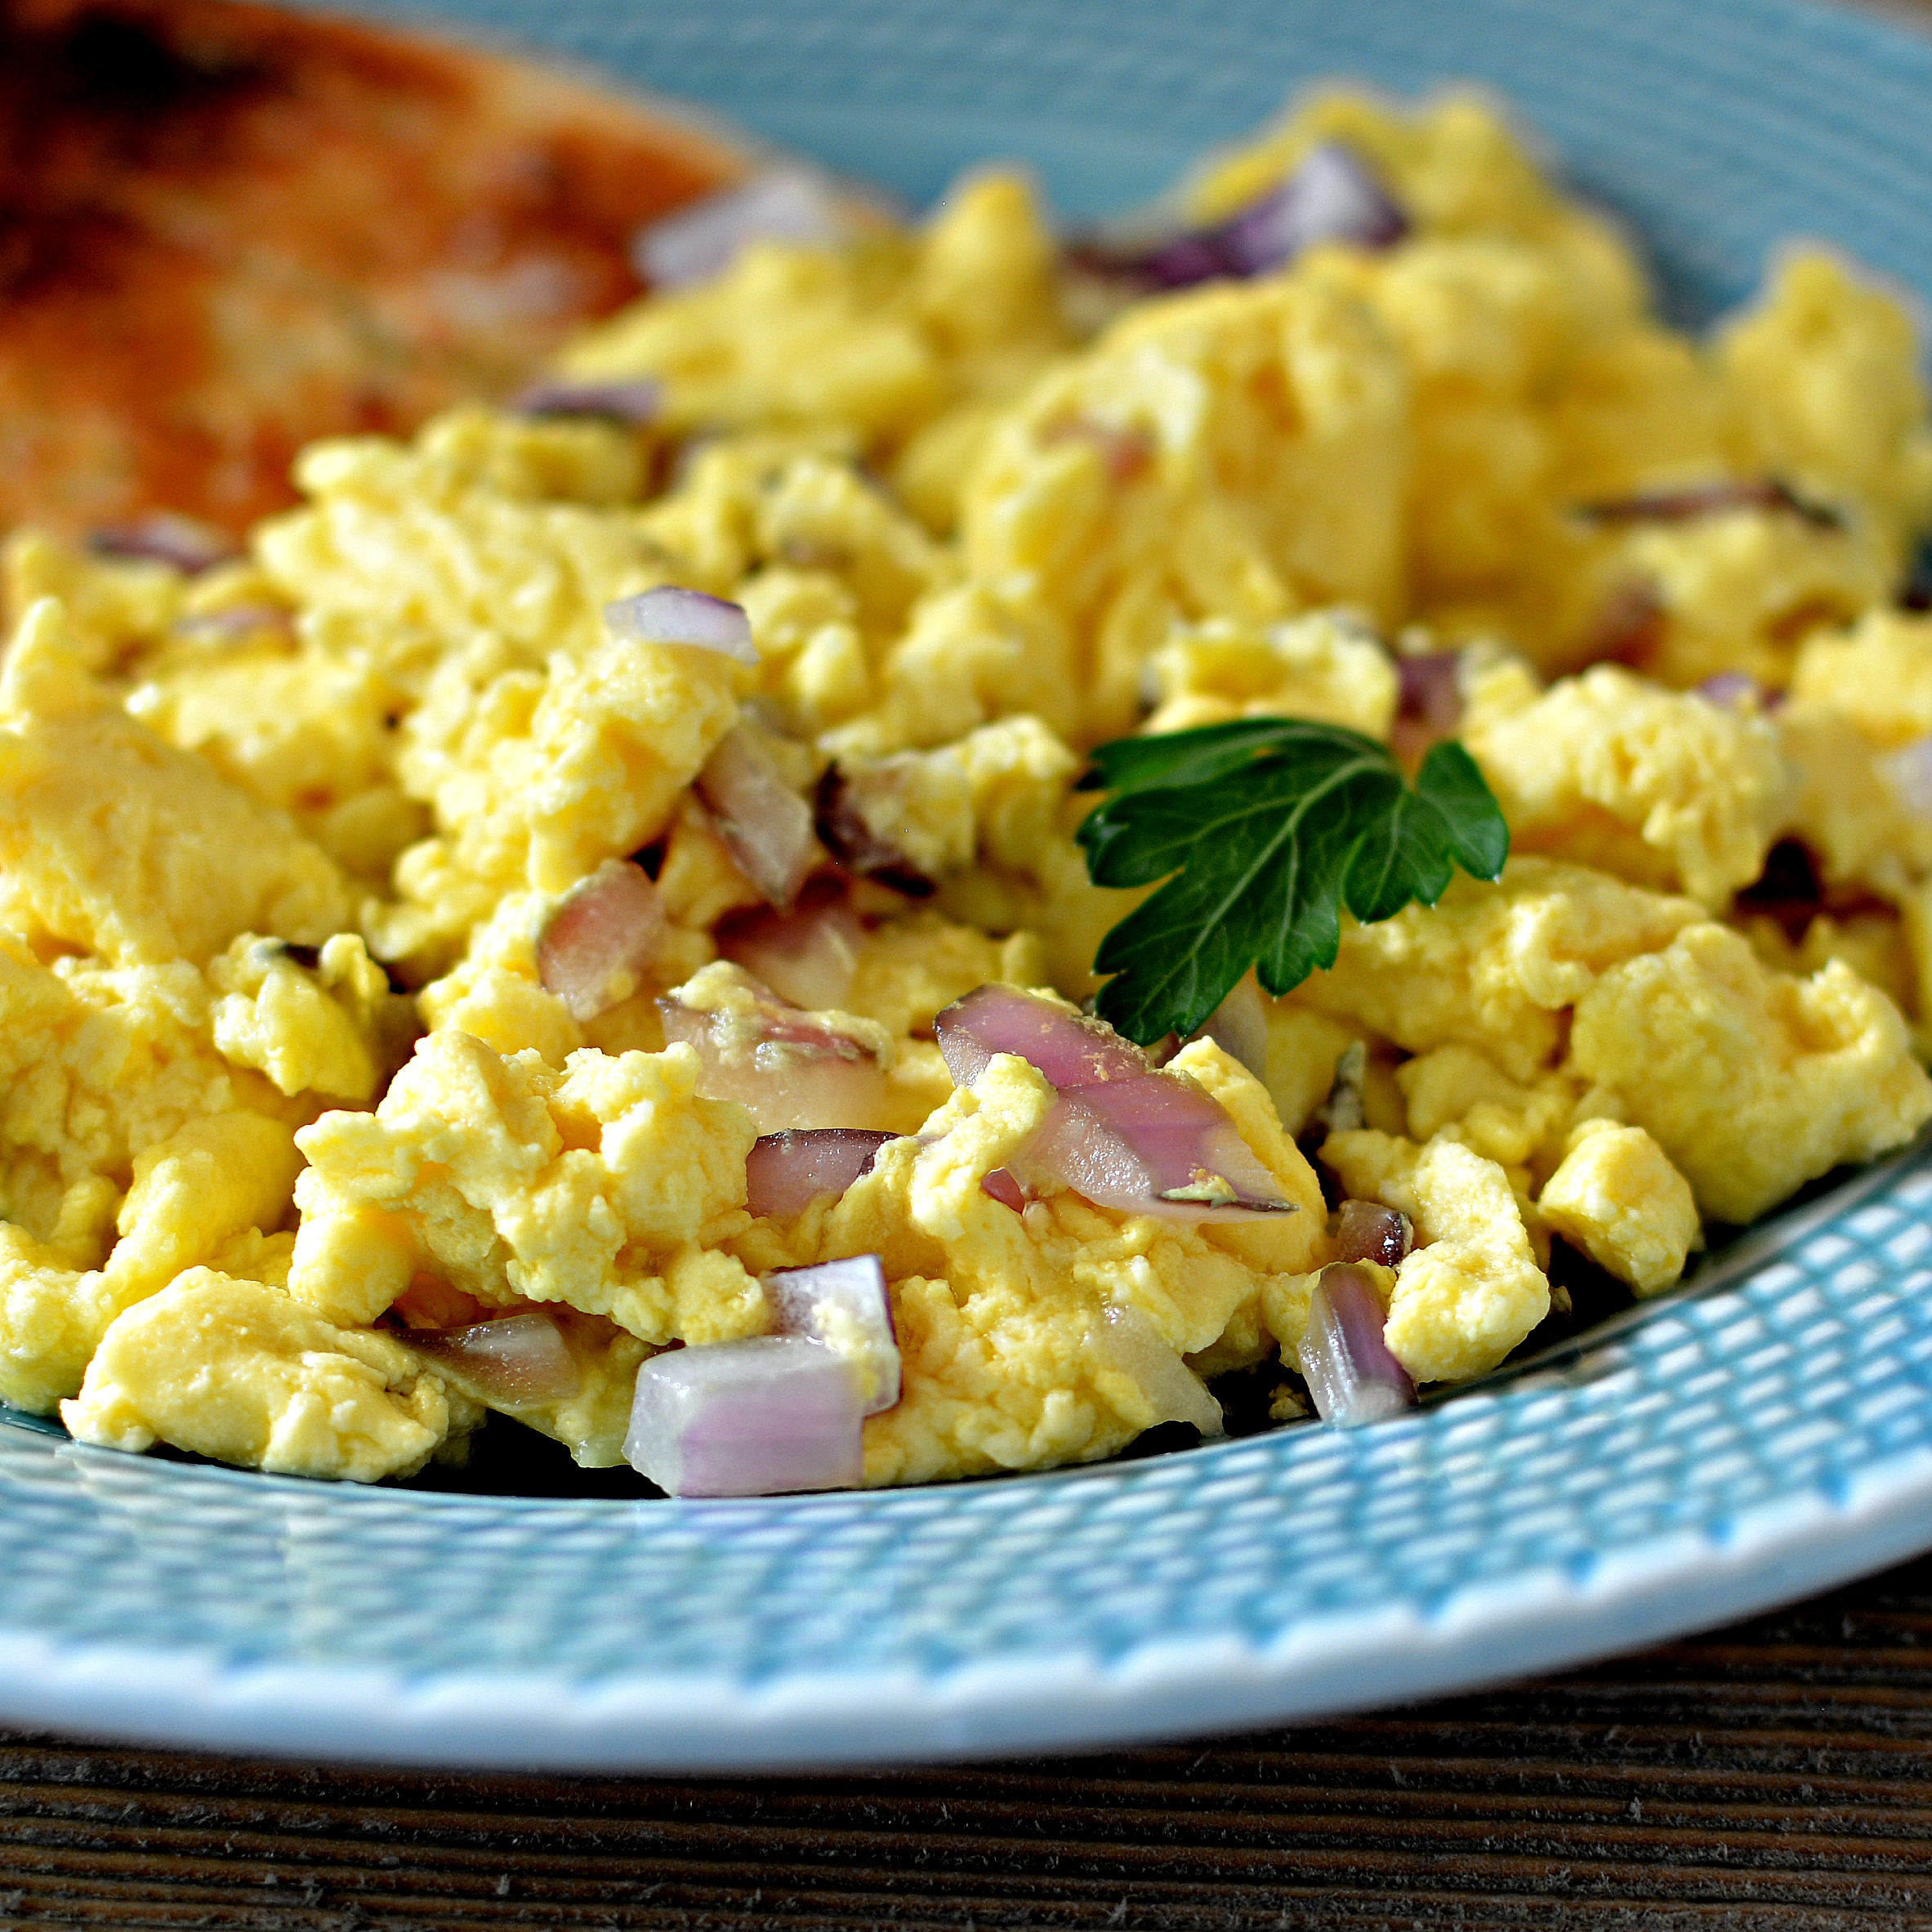 Perfect Scrambled Eggs Recipe Allrecipes